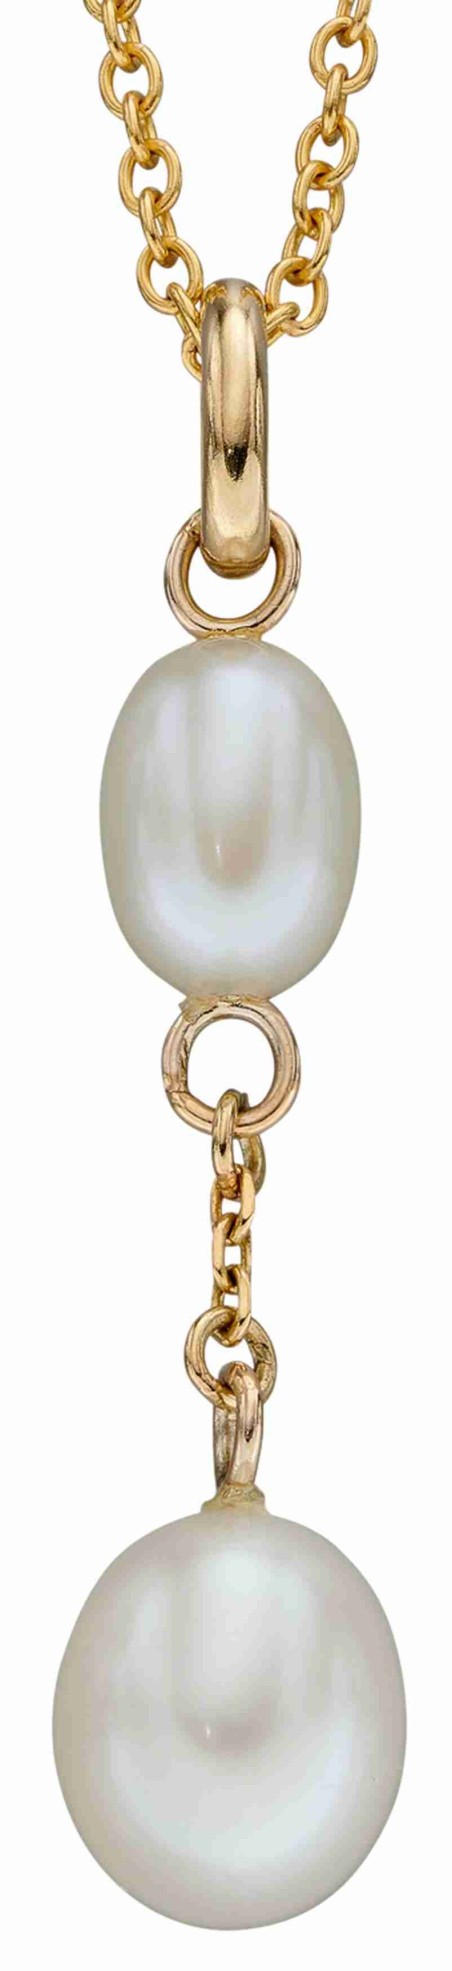 Mon-bijou - D2282c - Collier perle sur or 375/1000